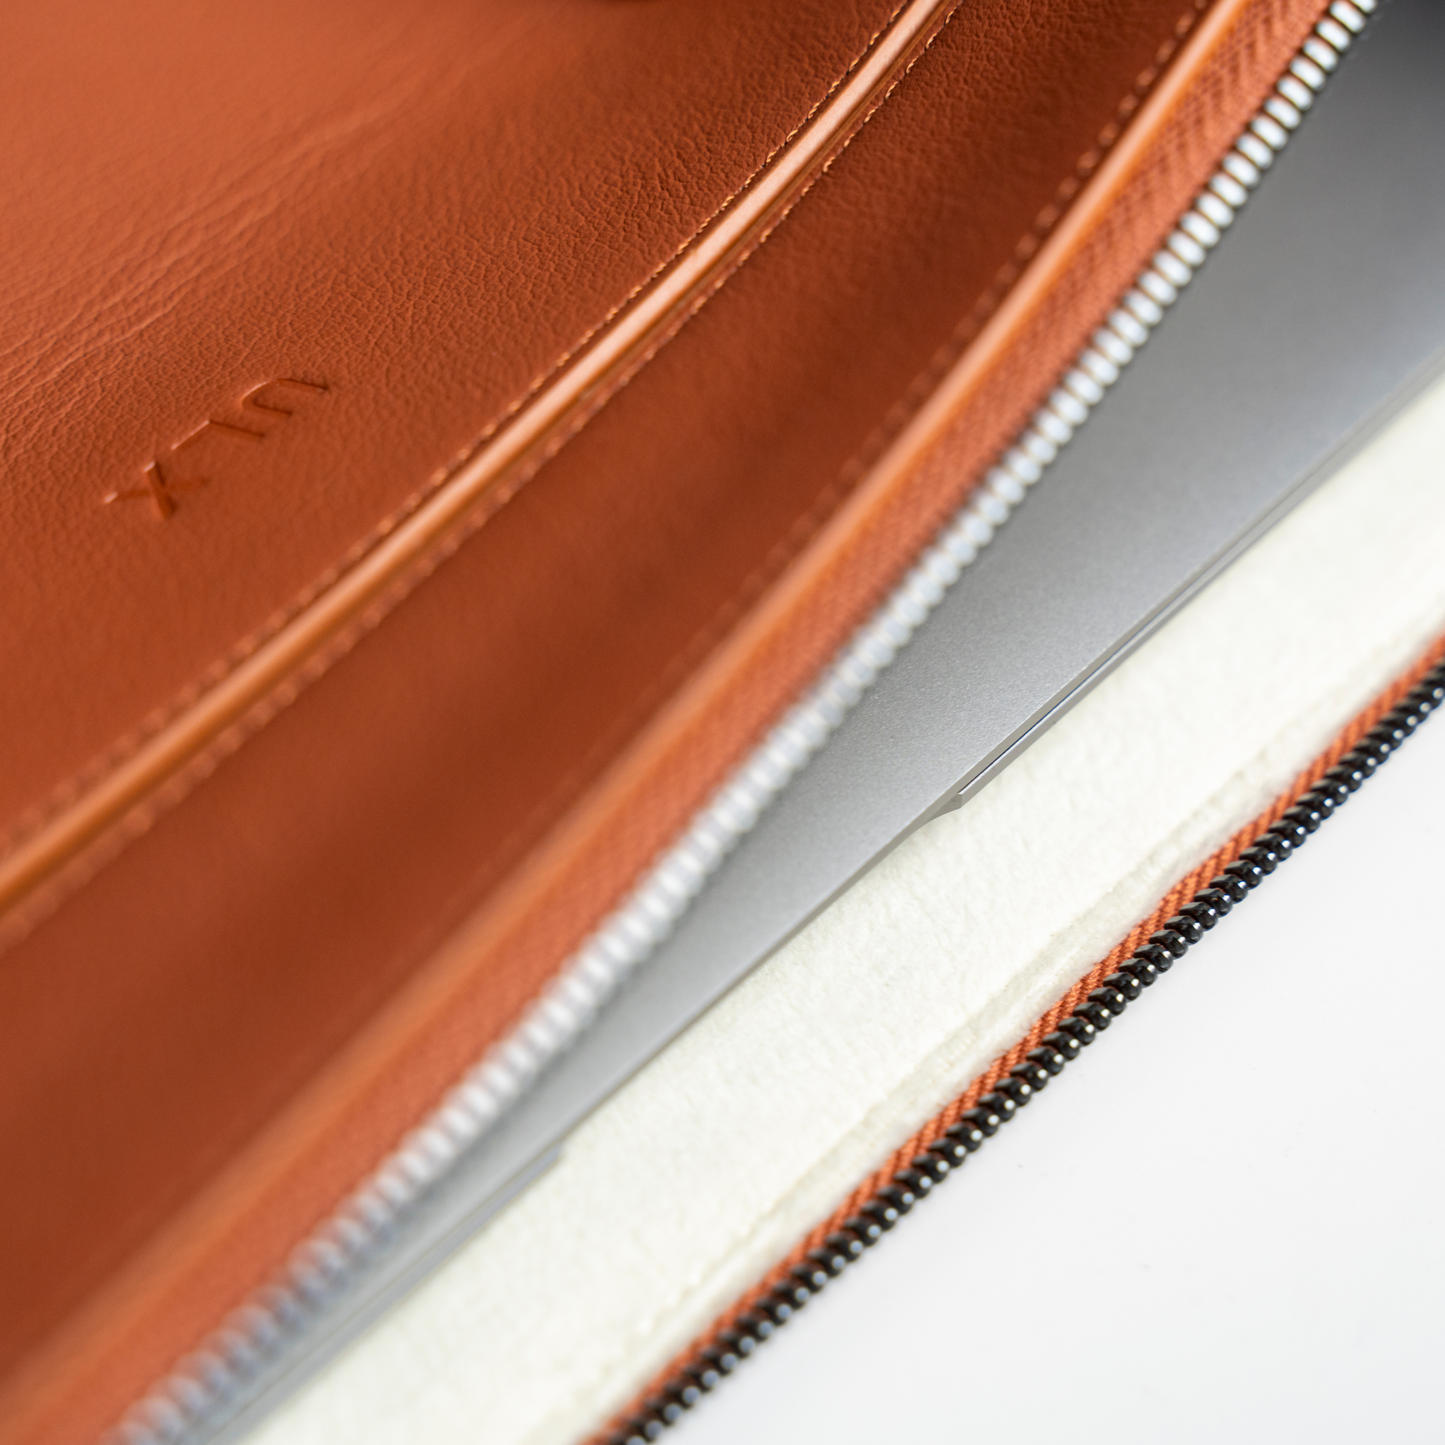 Leather MacBook Sleeve - Brown